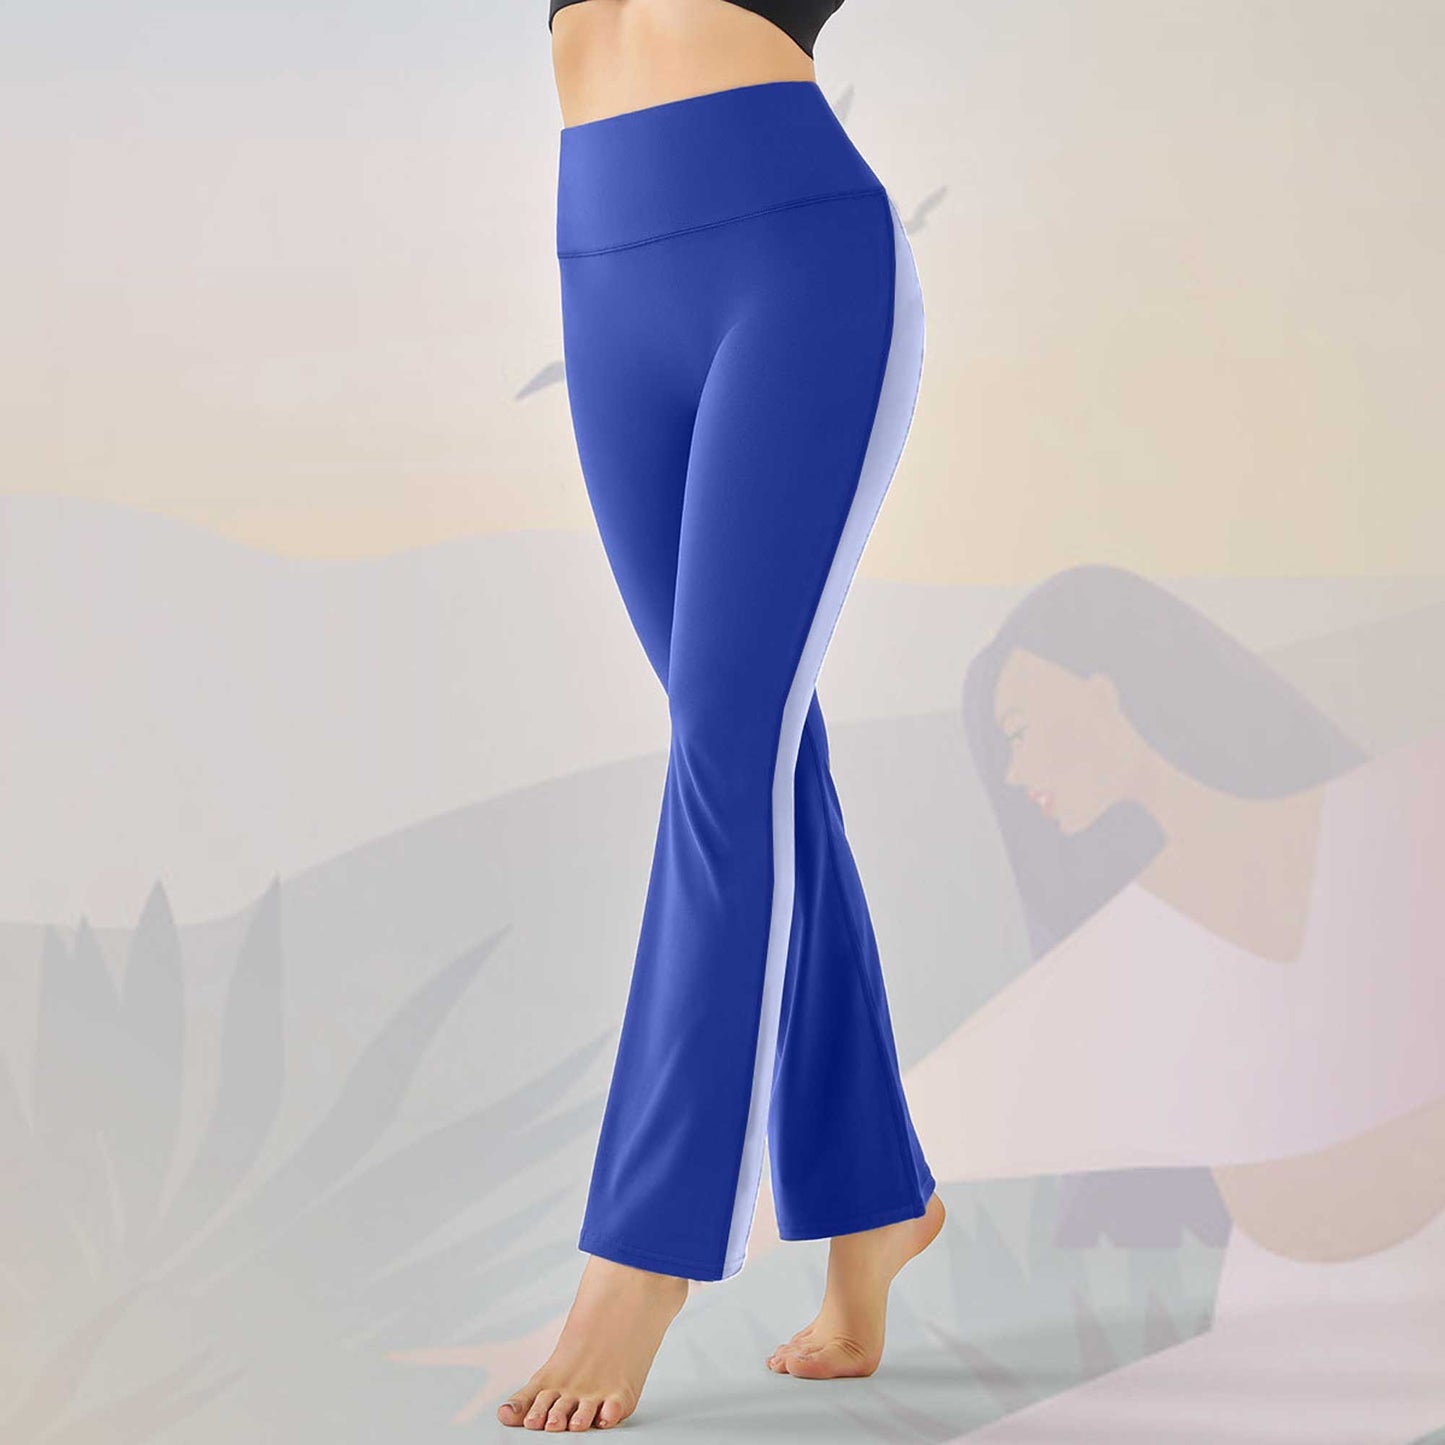 Polo Athletica Women's Yoga Pants